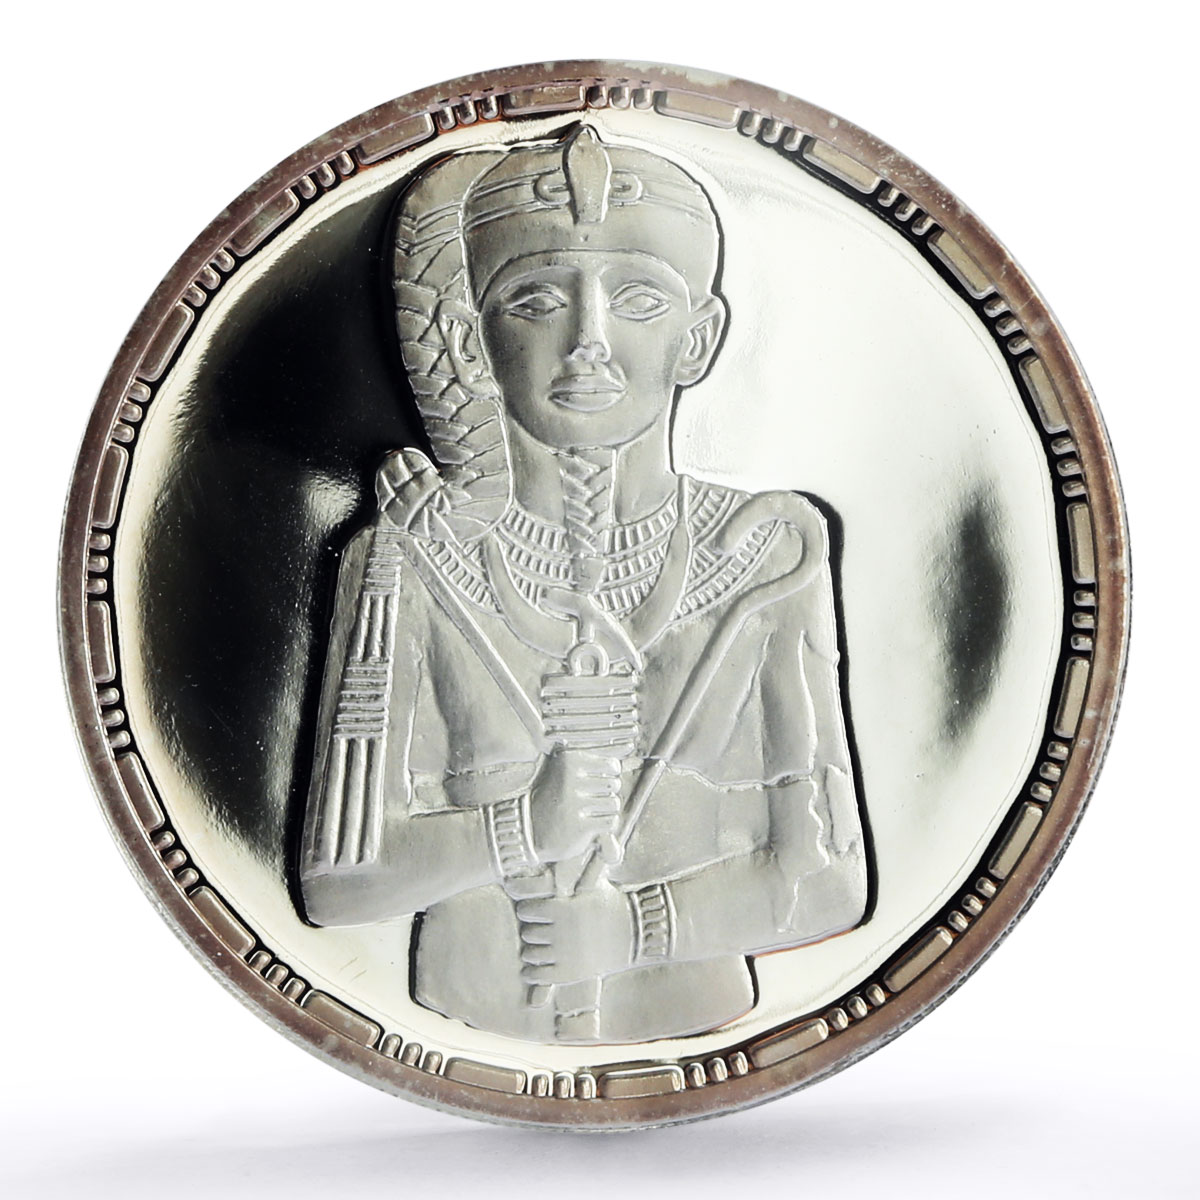 Egypt 5 pounds Ancient Treasures King Khonsu Sculpture PR69 PCGS Ag coin 1994